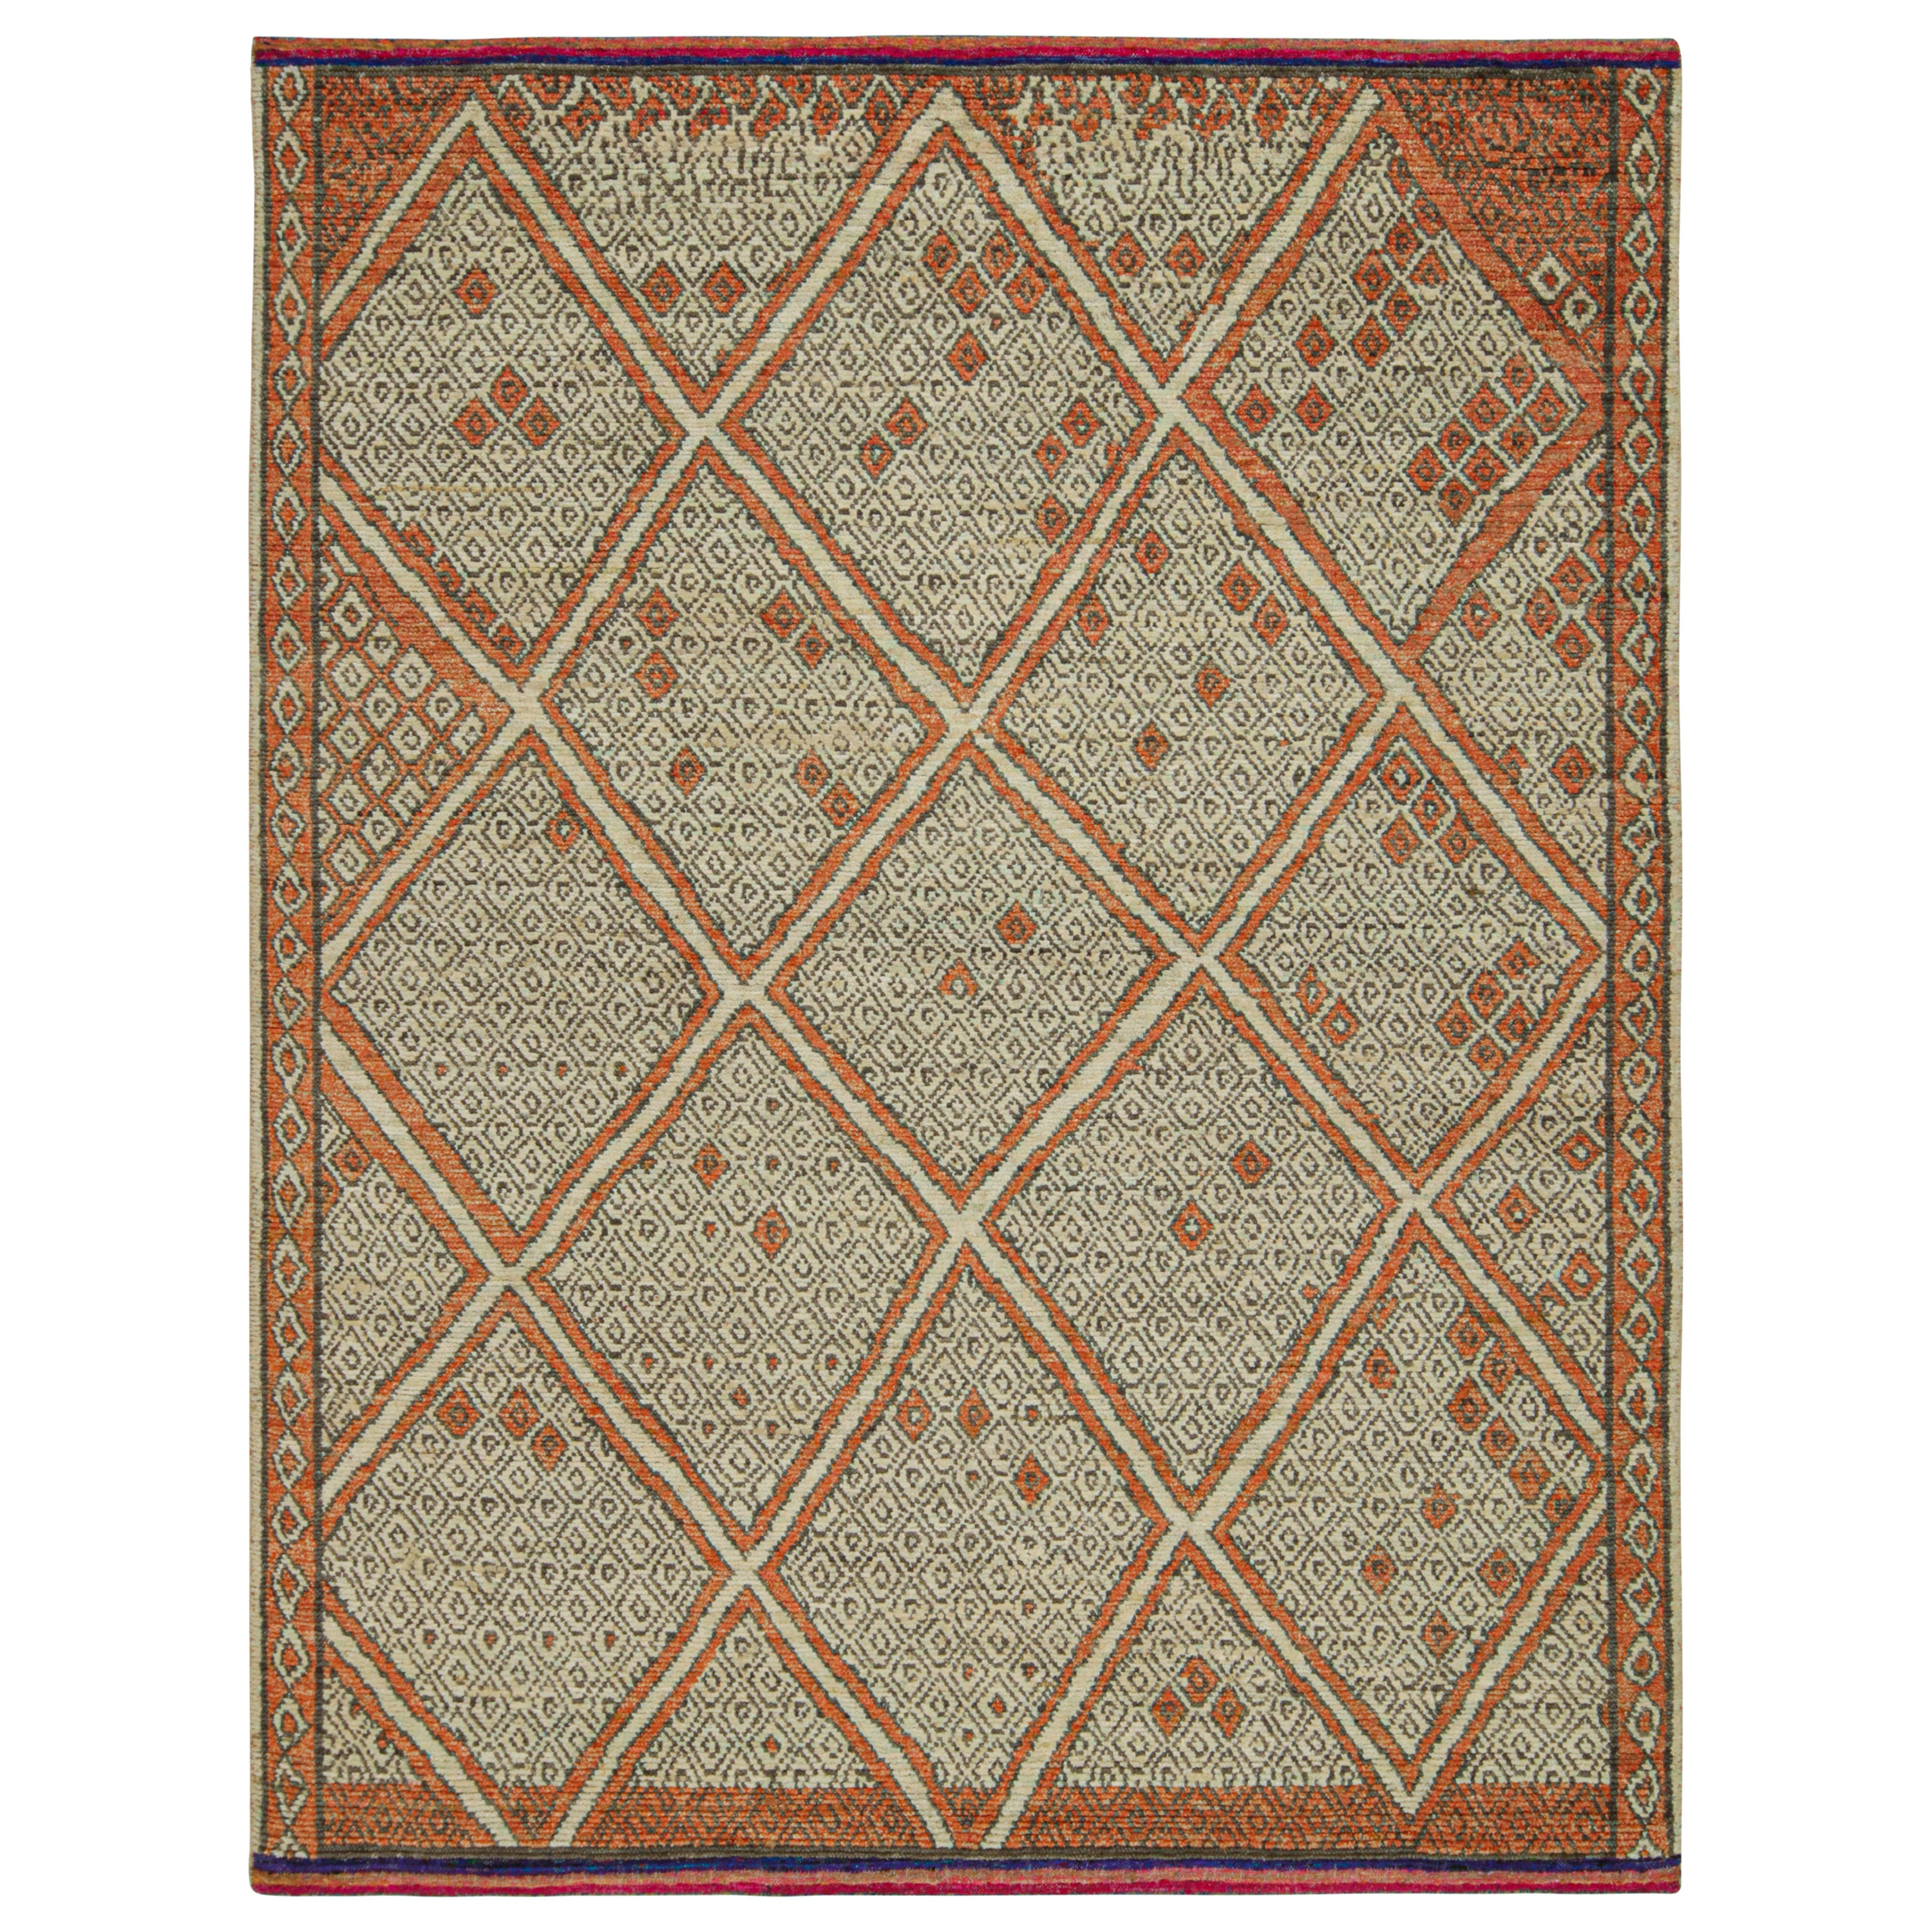 Marokkanischer Teppich von Rug & Kilim in Rost mit geometrischem Muster in Beige und Grau